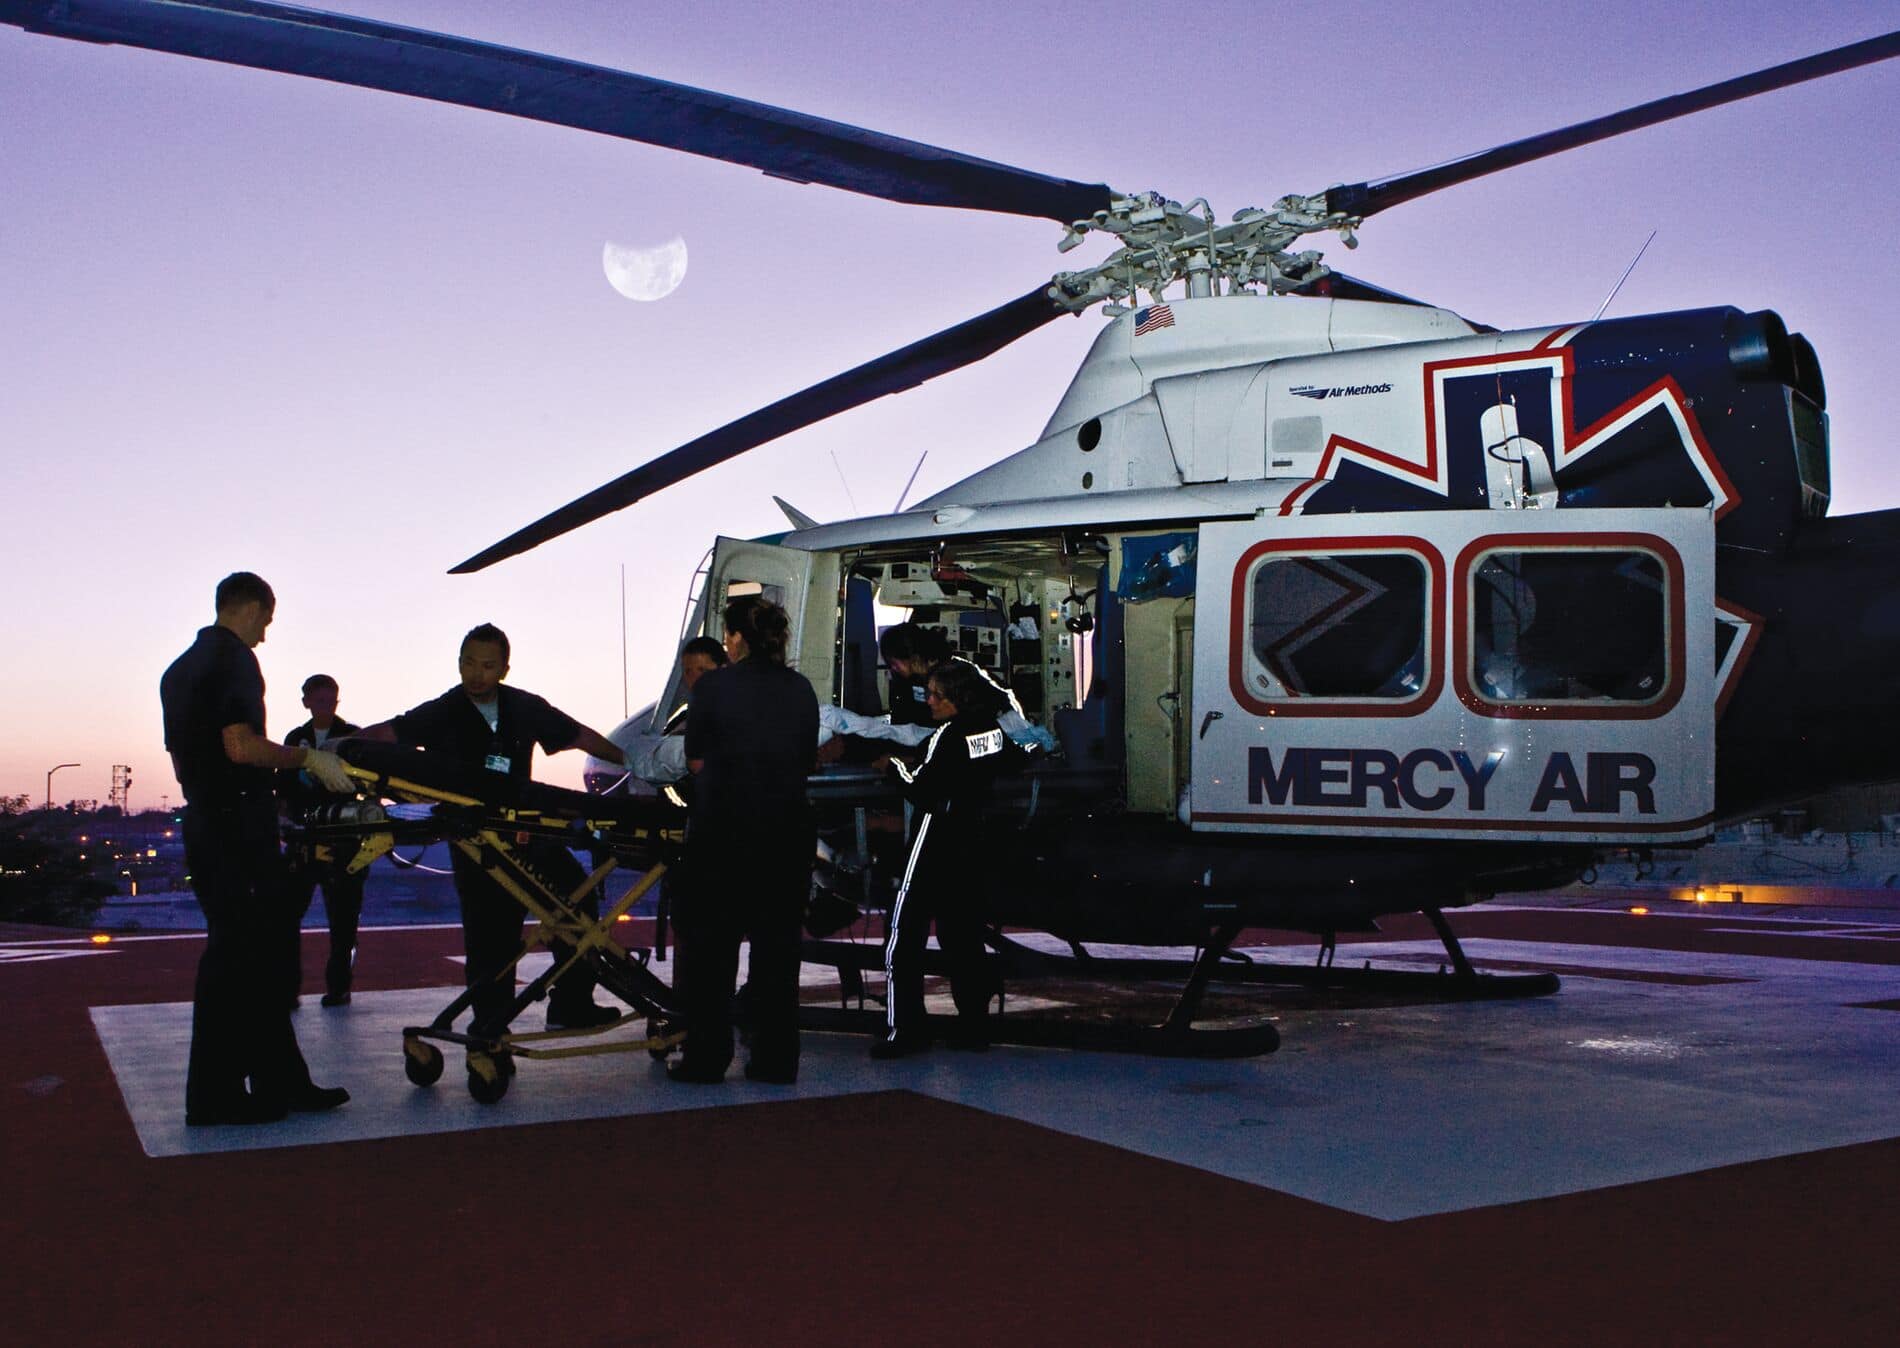 Luftmethoden Bell 412 auf Boden bei der Beladung eines Patienten